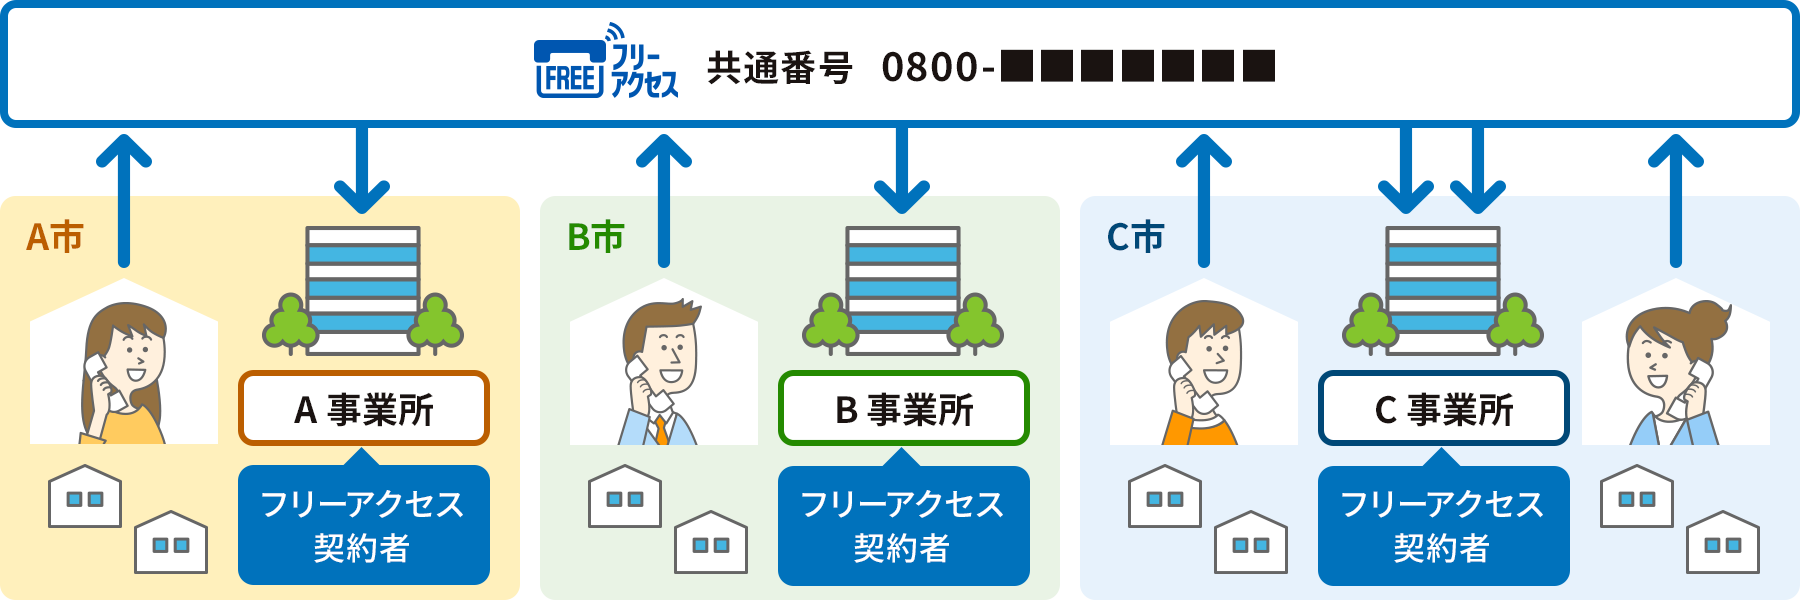 フリーアクセス オプション 加入電話とinsネットのオプションサービス 加入電話 Ntt西日本